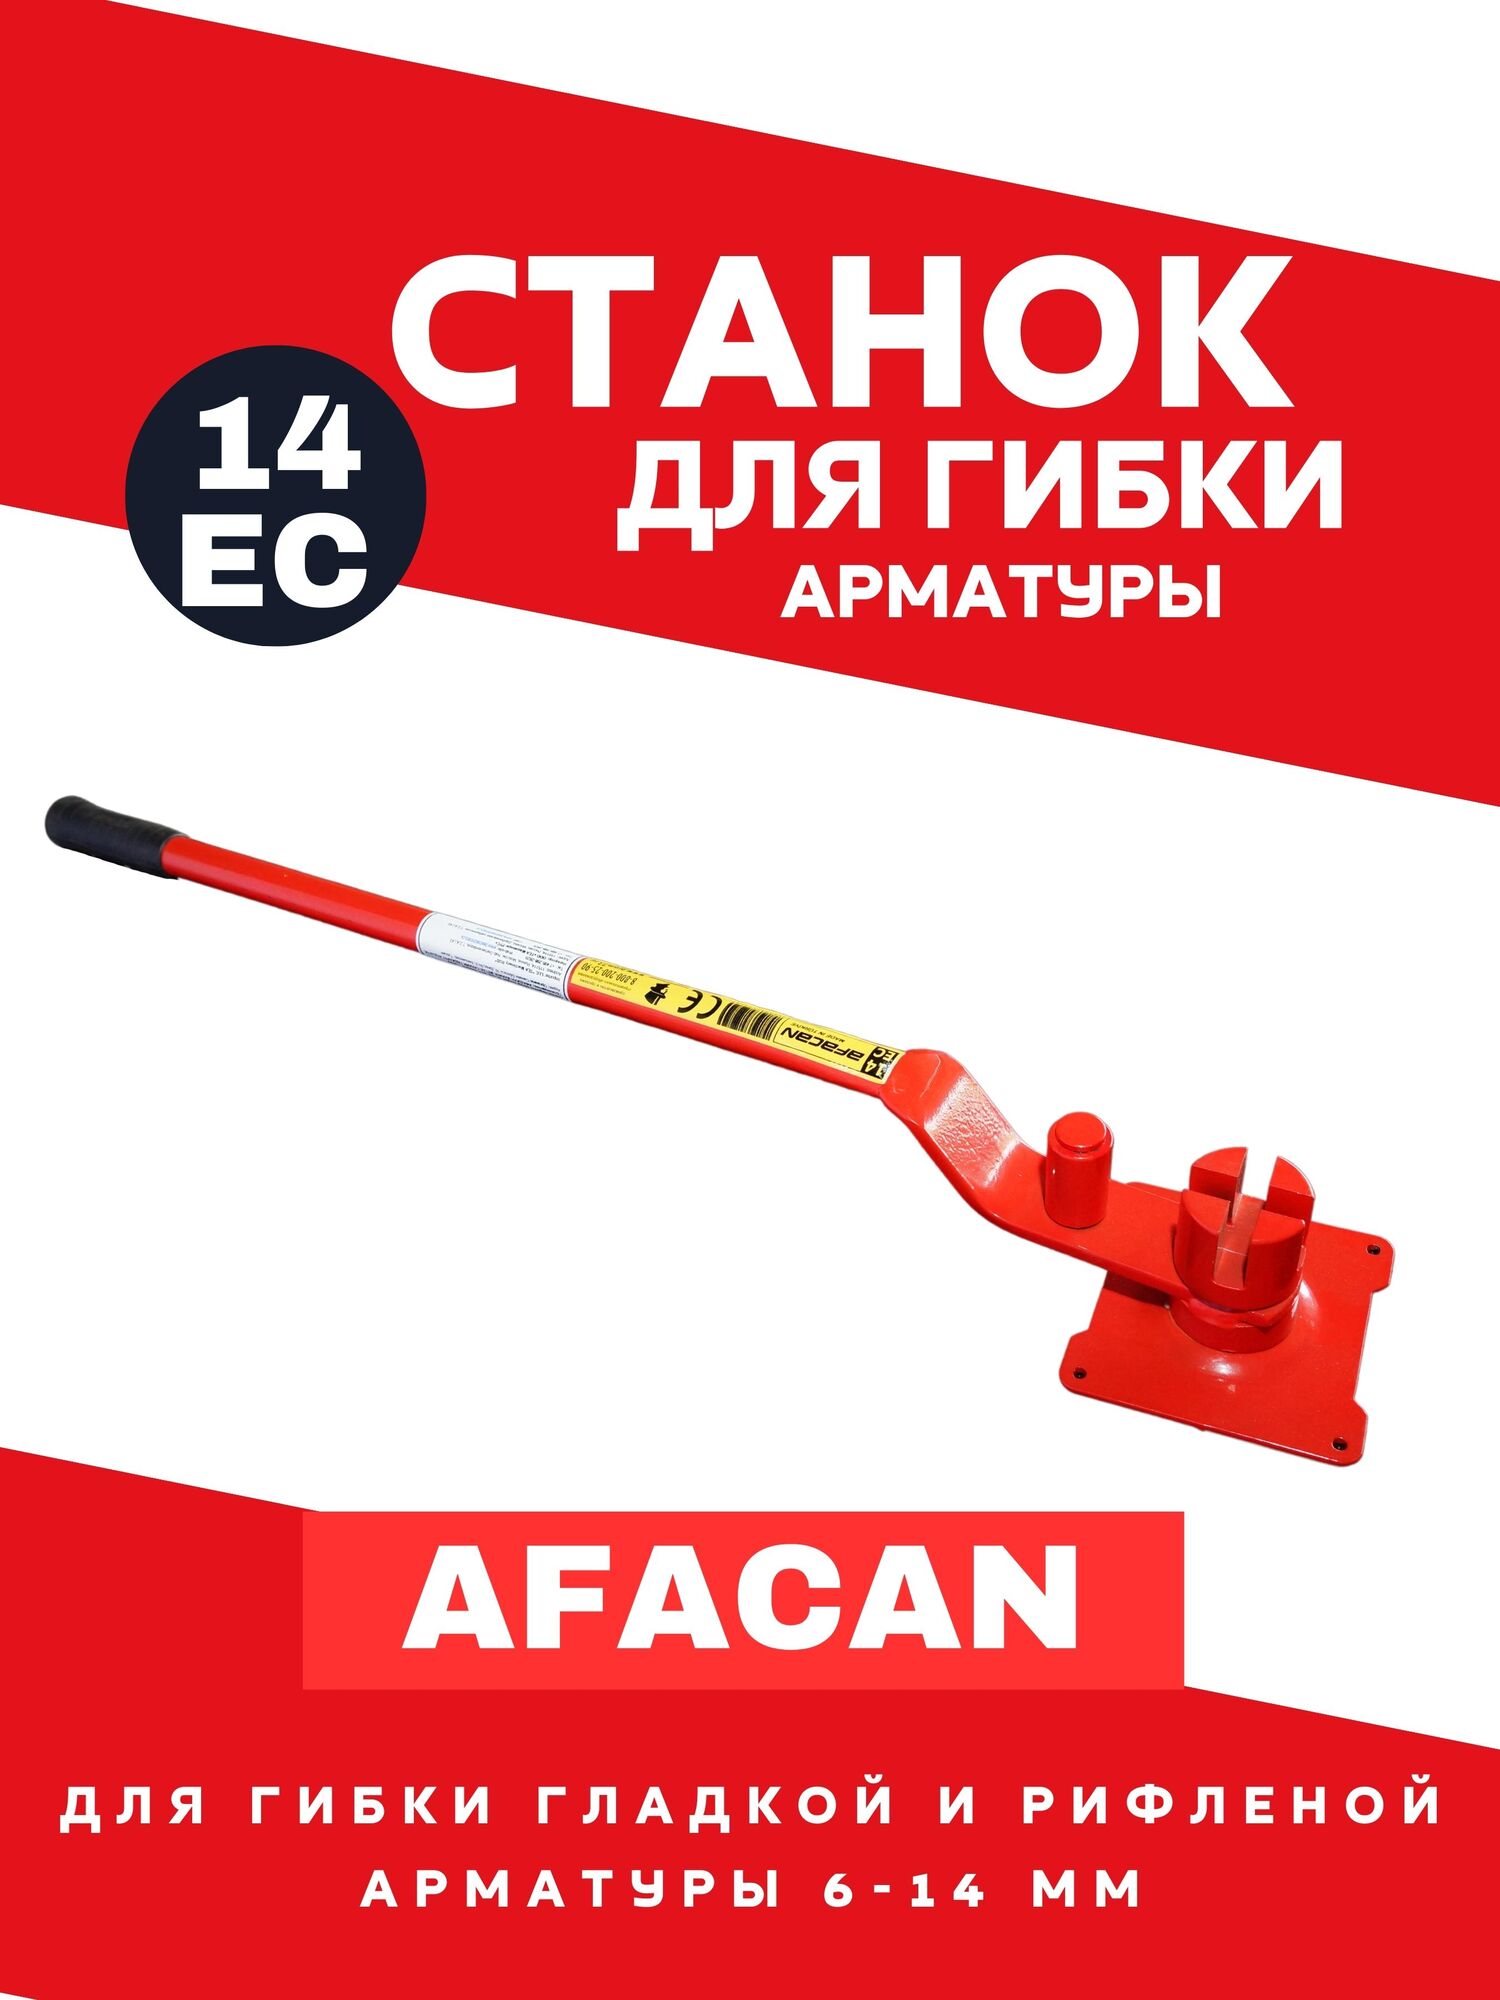 Ручной станок для гибки арматуры AFACAN 14ЕС 1